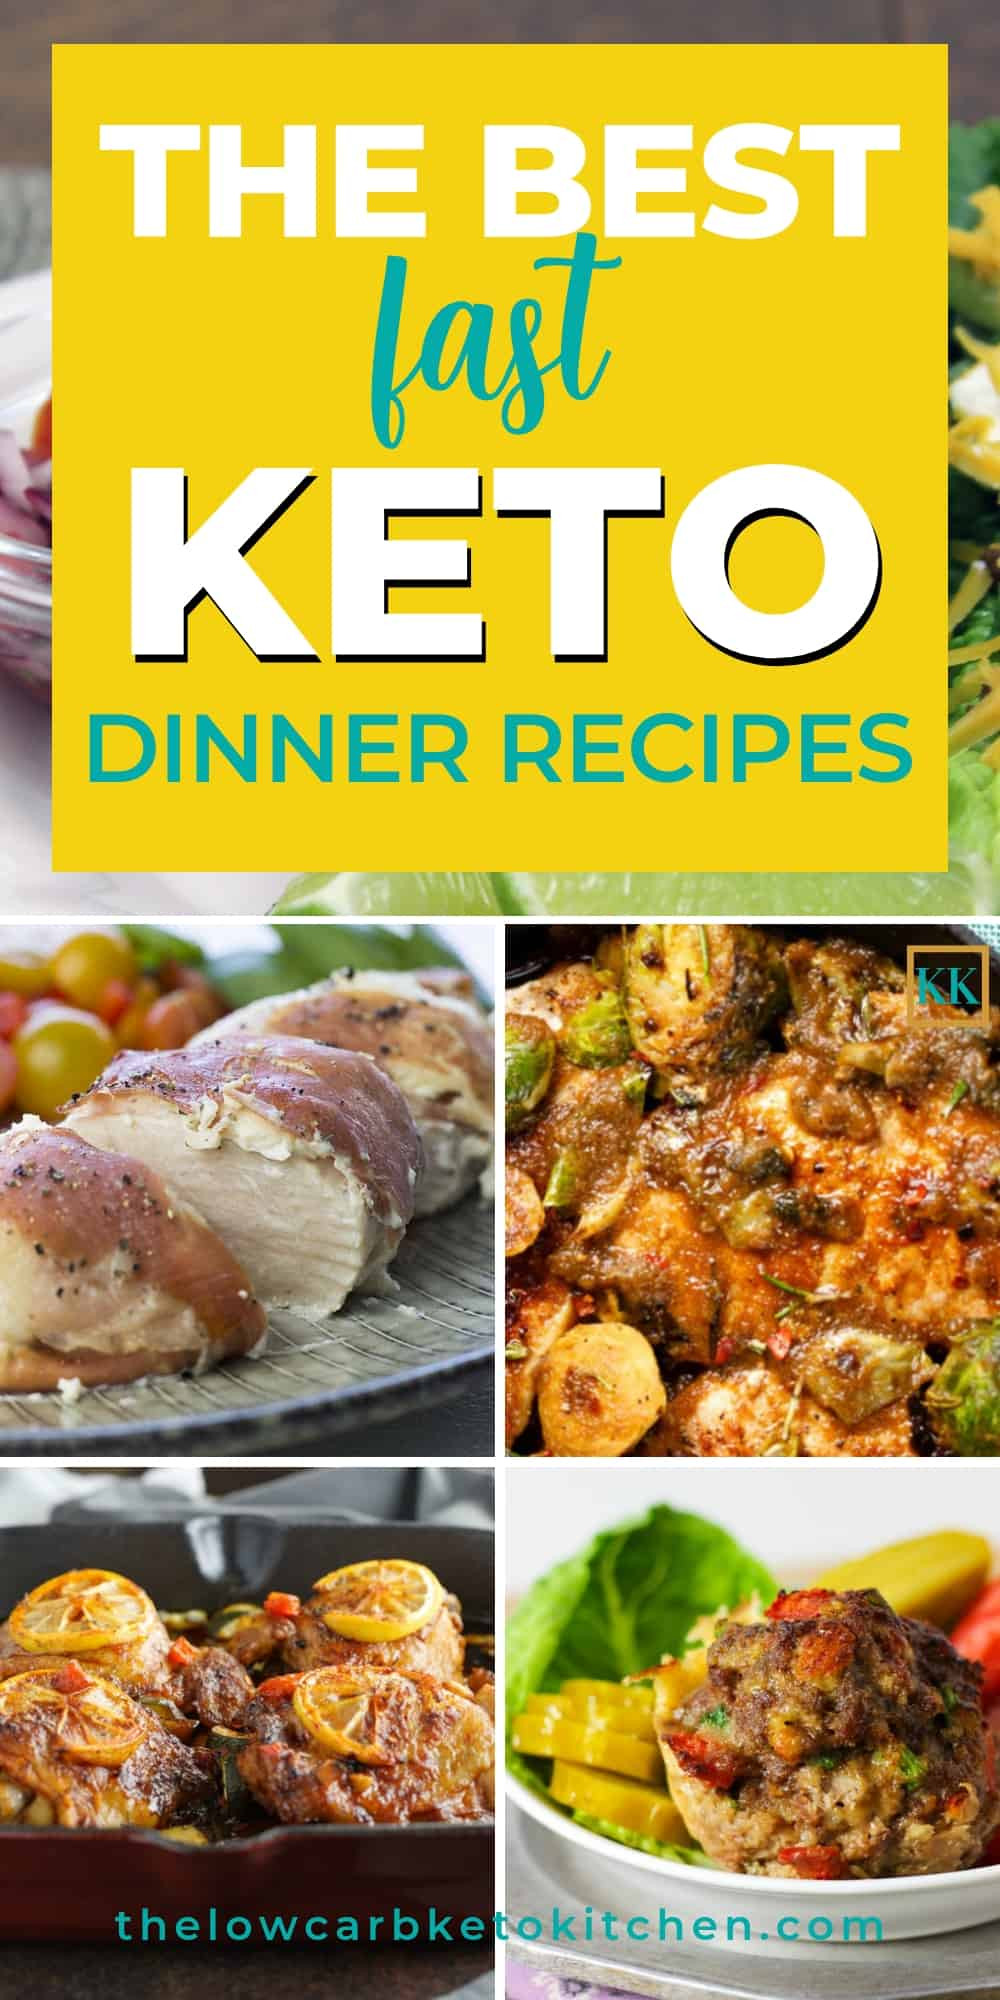 Fast Keto Dinner
 17 of the Best Fast Keto Dinner Recipes